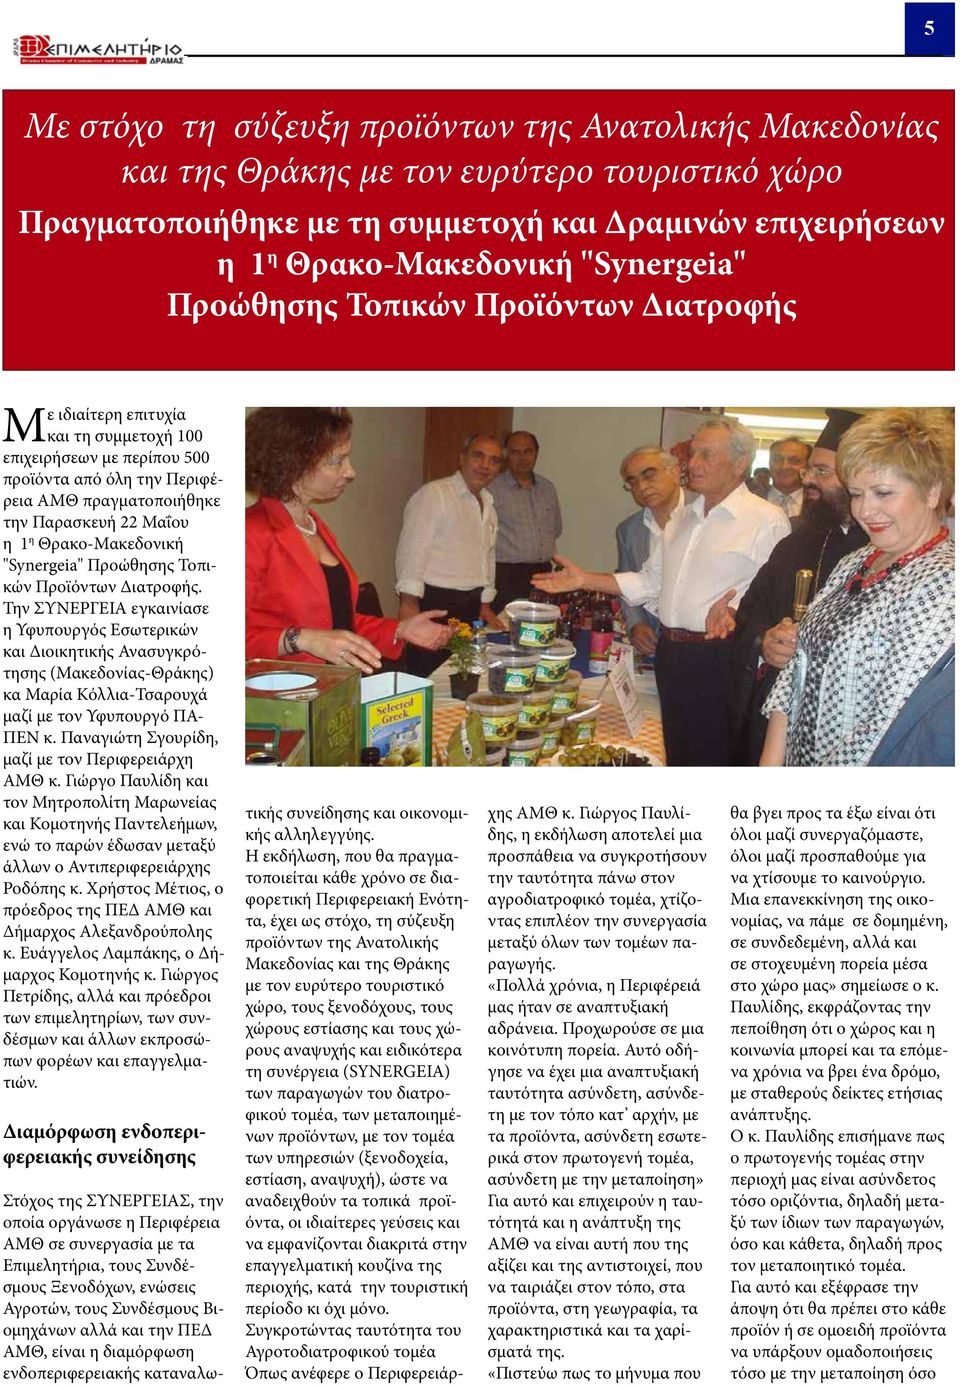 Θρακο-Μακεδονική "Synergeia" Προώθησης Τοπικών Προϊόντων Διατροφής.